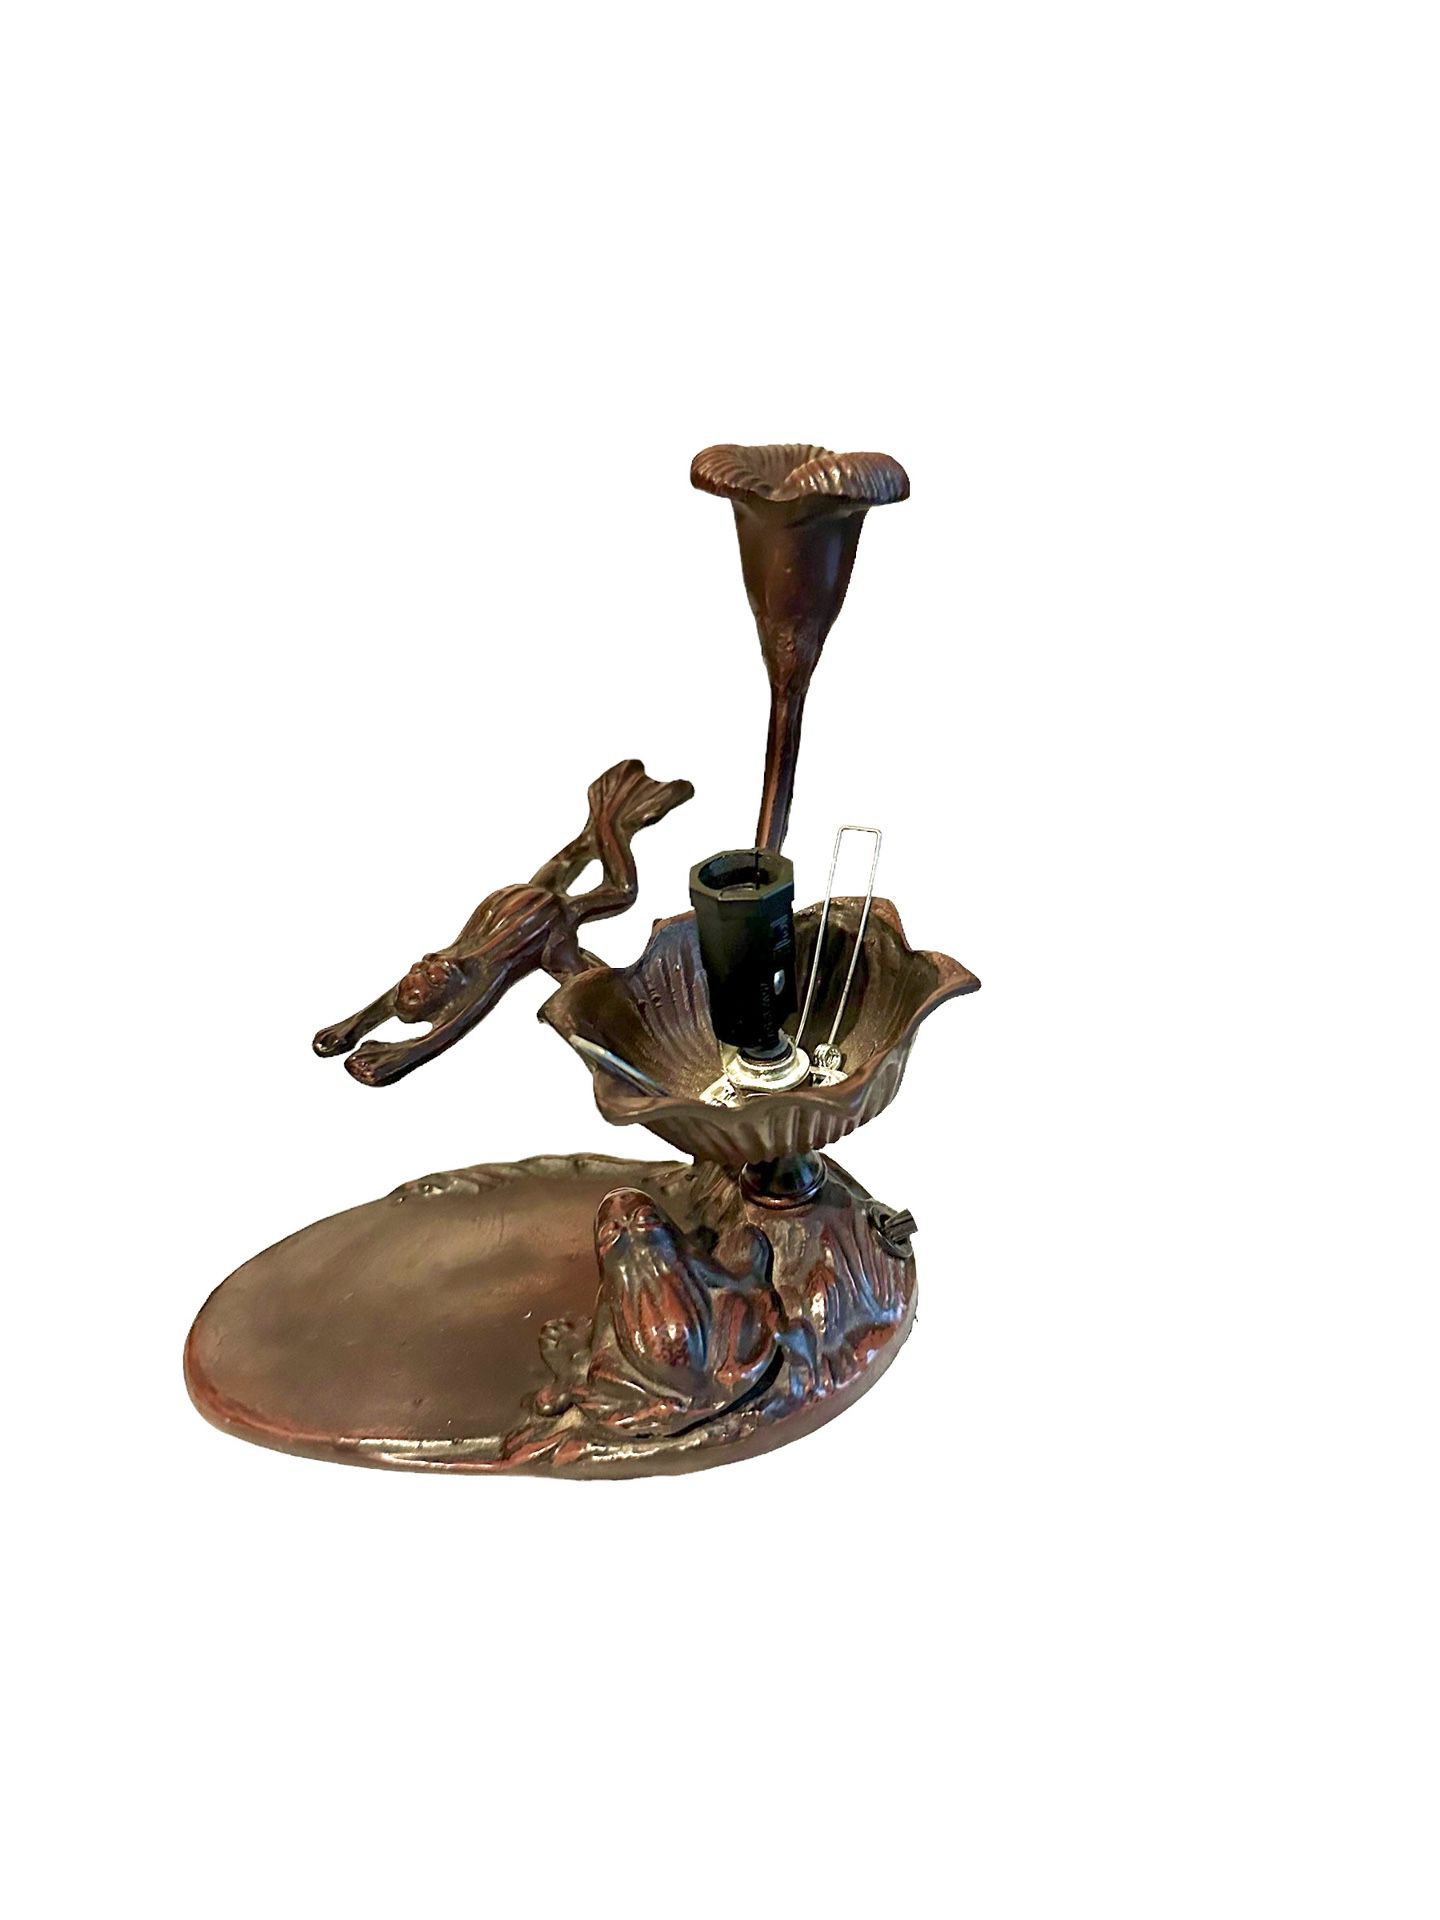 Vintage Bronze Art nouveau diving frog table lamp